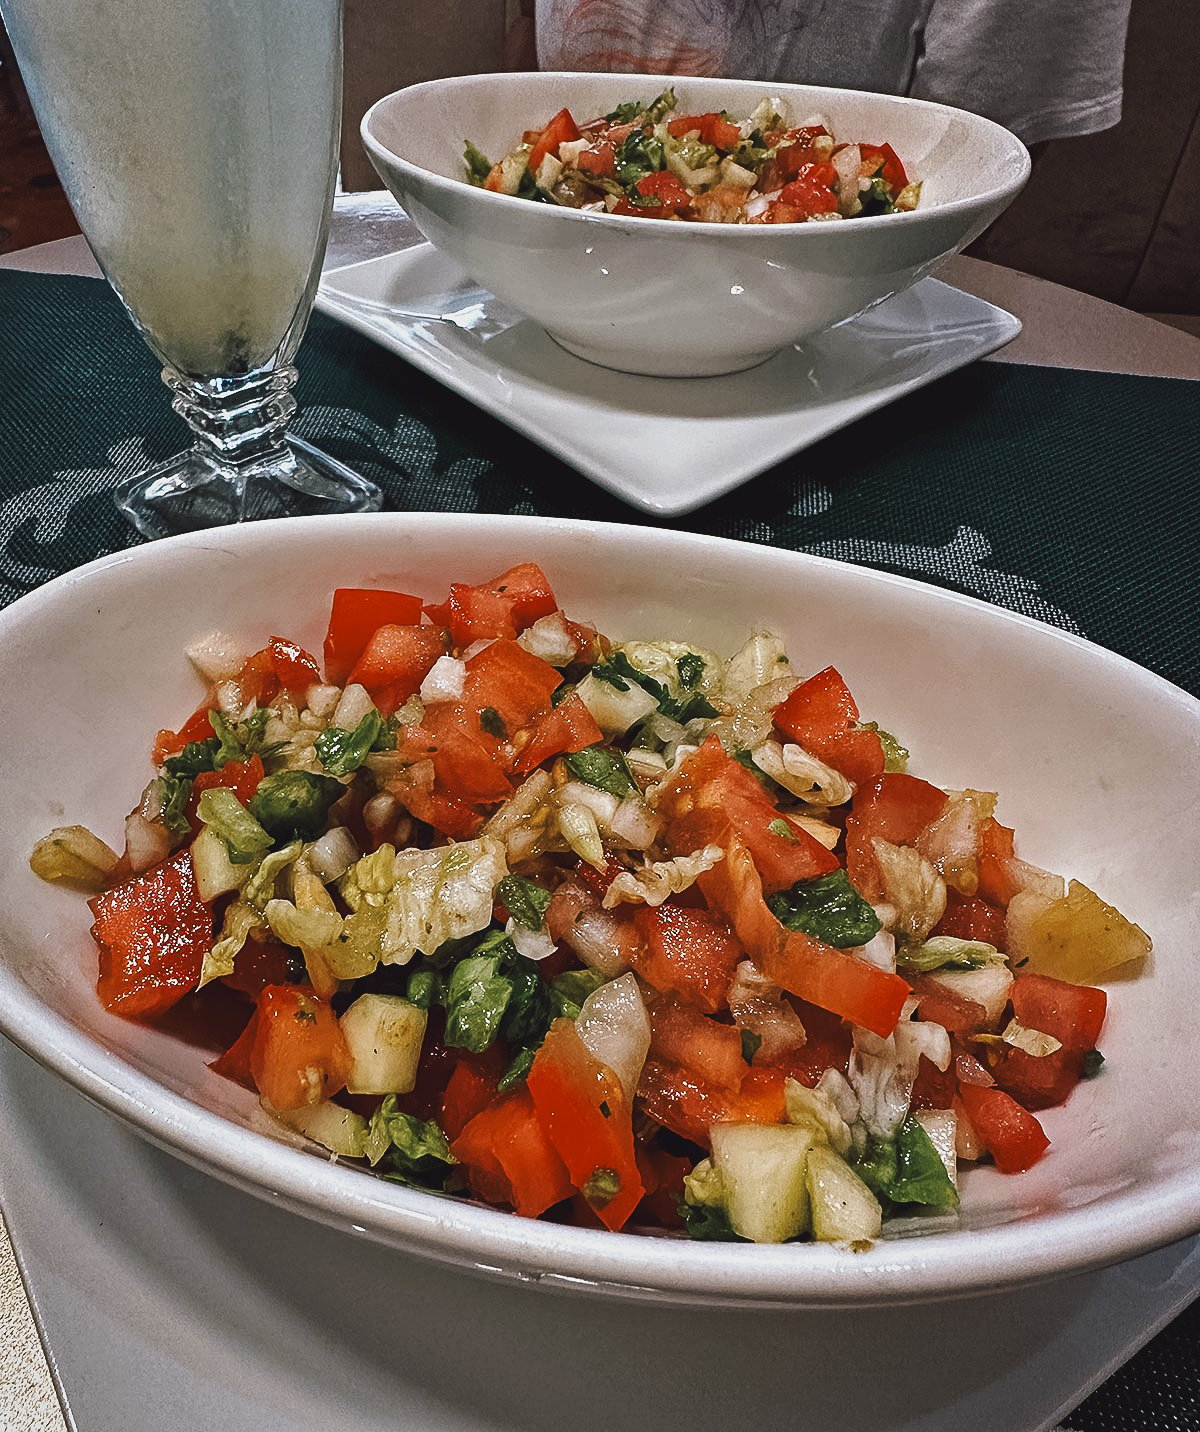 Moroccan salad at a restaurant in Casablanca